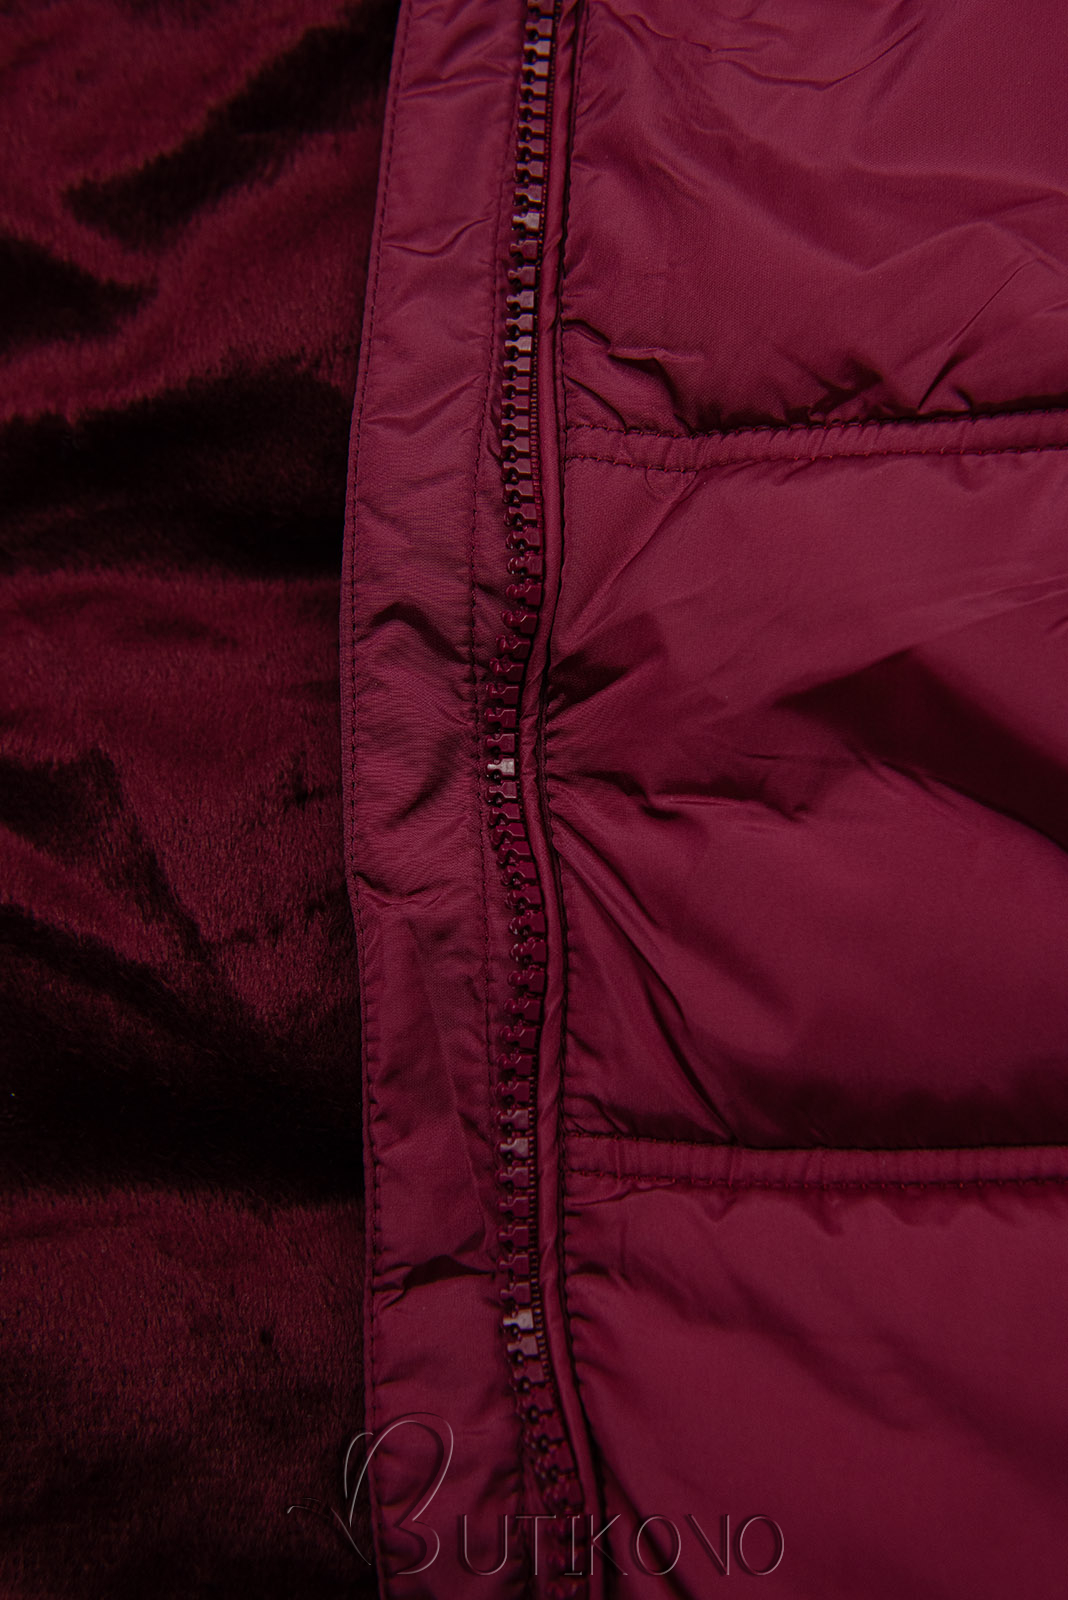 Burgundy zimná bunda v prešívanom dizajne